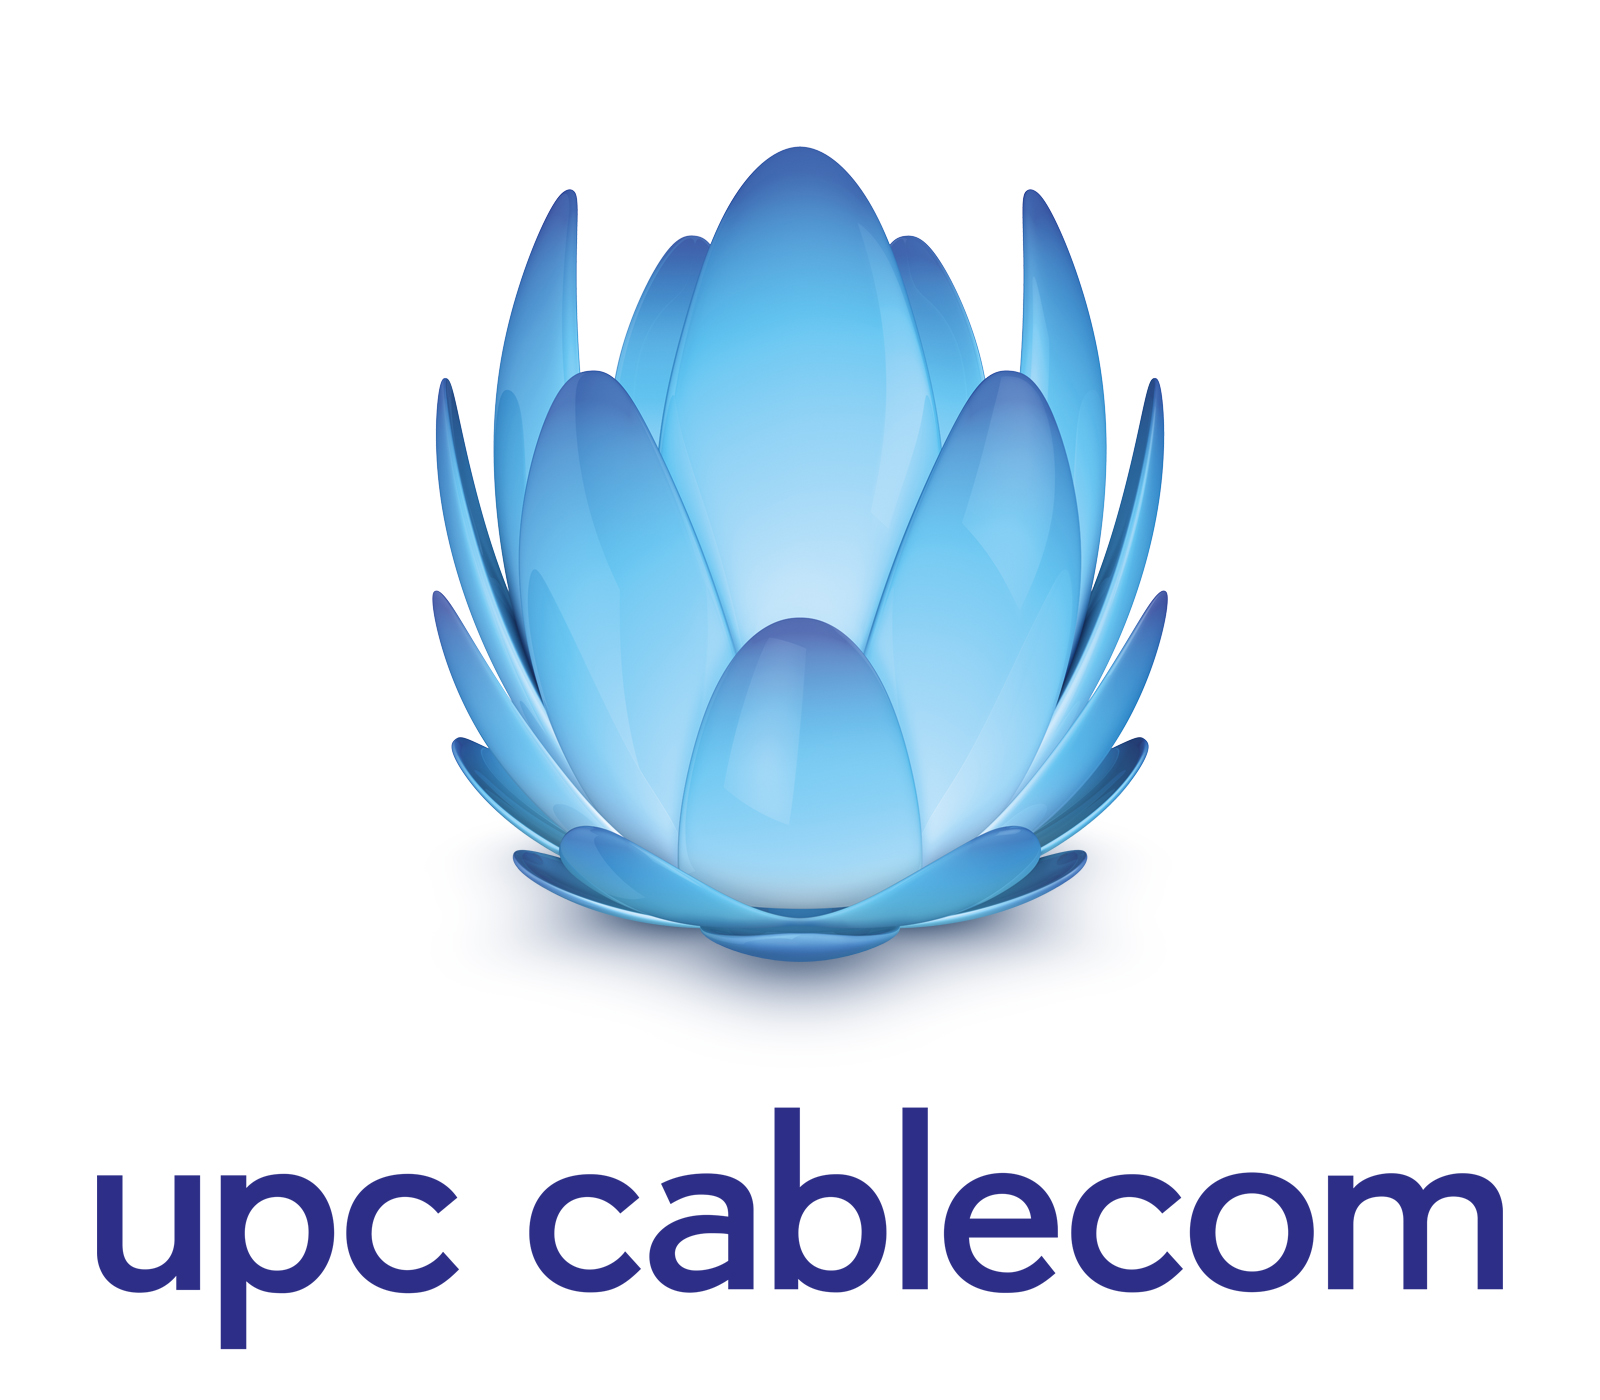 Upc_Cablecom.jpg